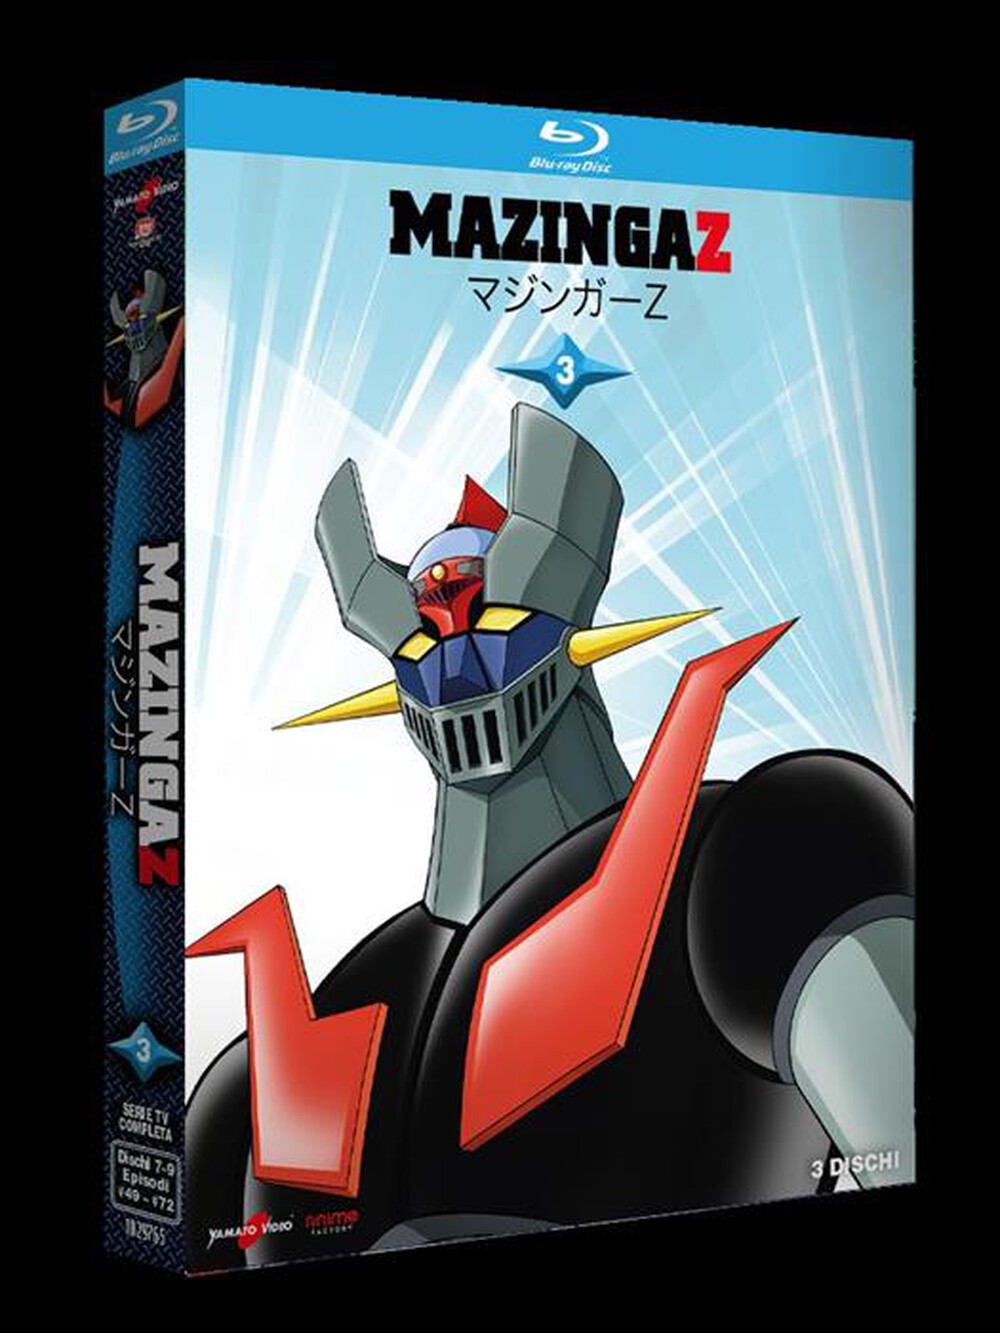 "YAMATO VIDEO - Mazinga Z #03 (3 Blu-Ray)"